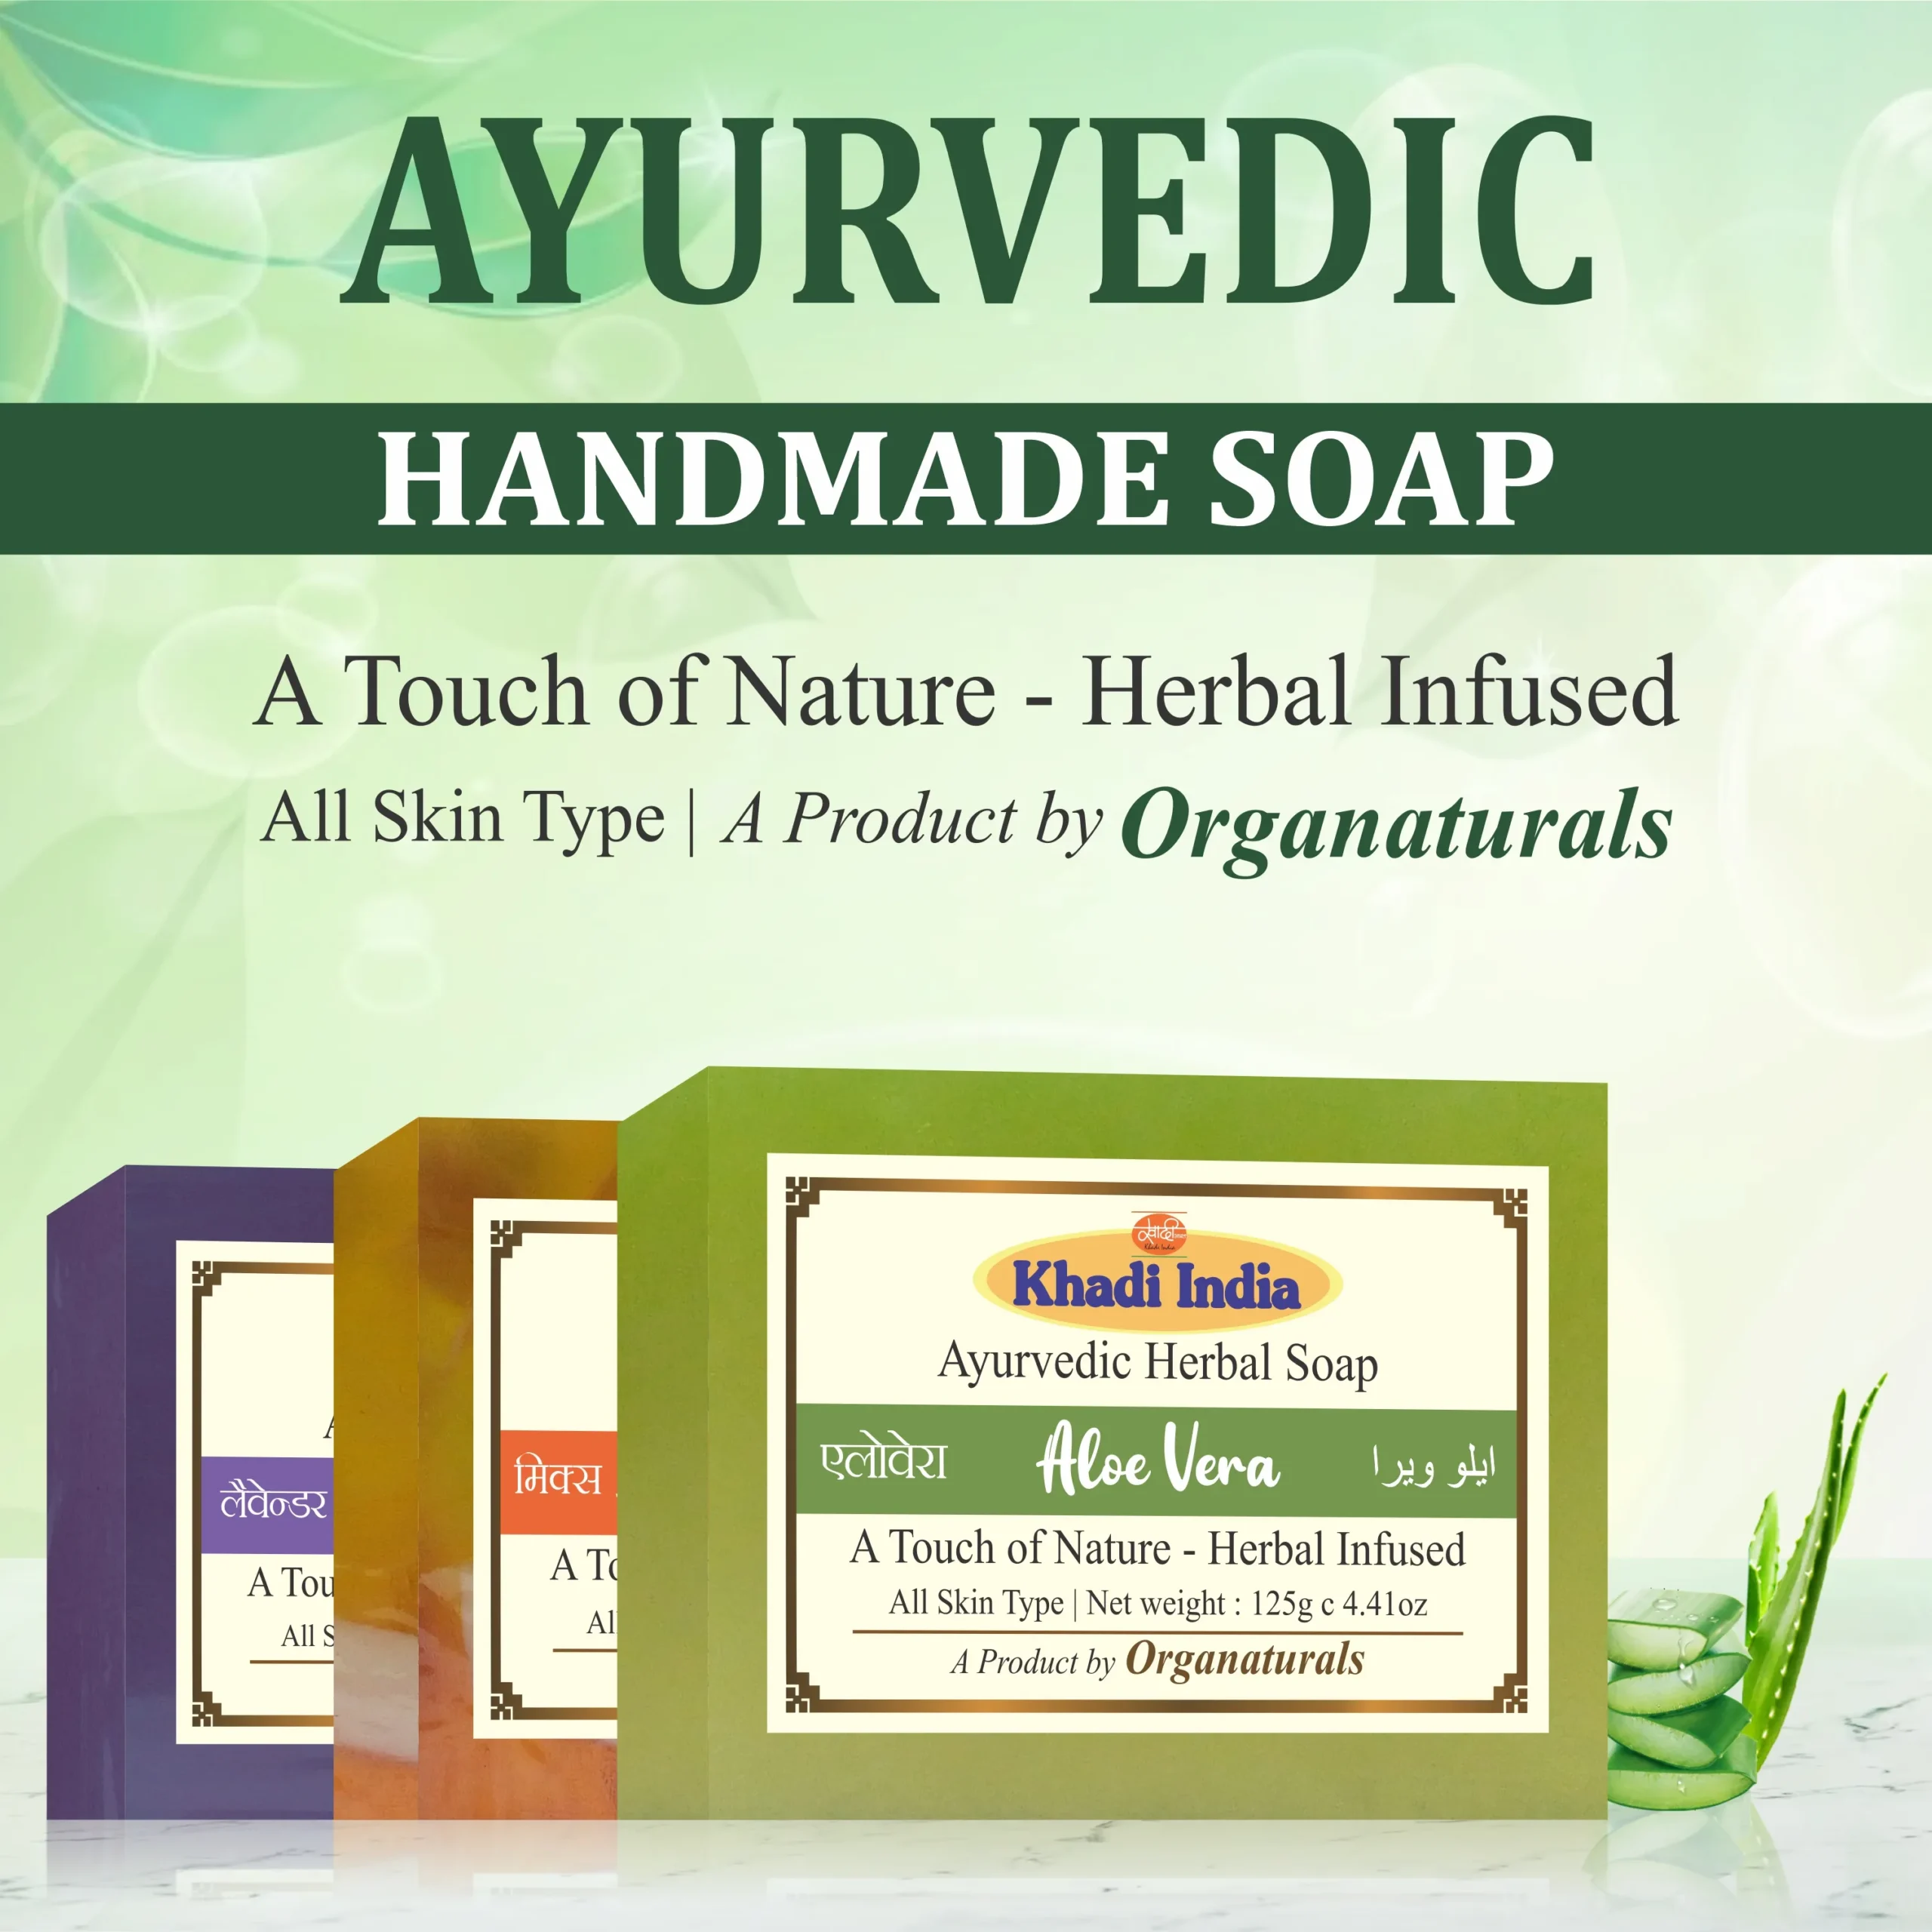 ayurvedic handmade soap mobile banner - www.dkihenna.com